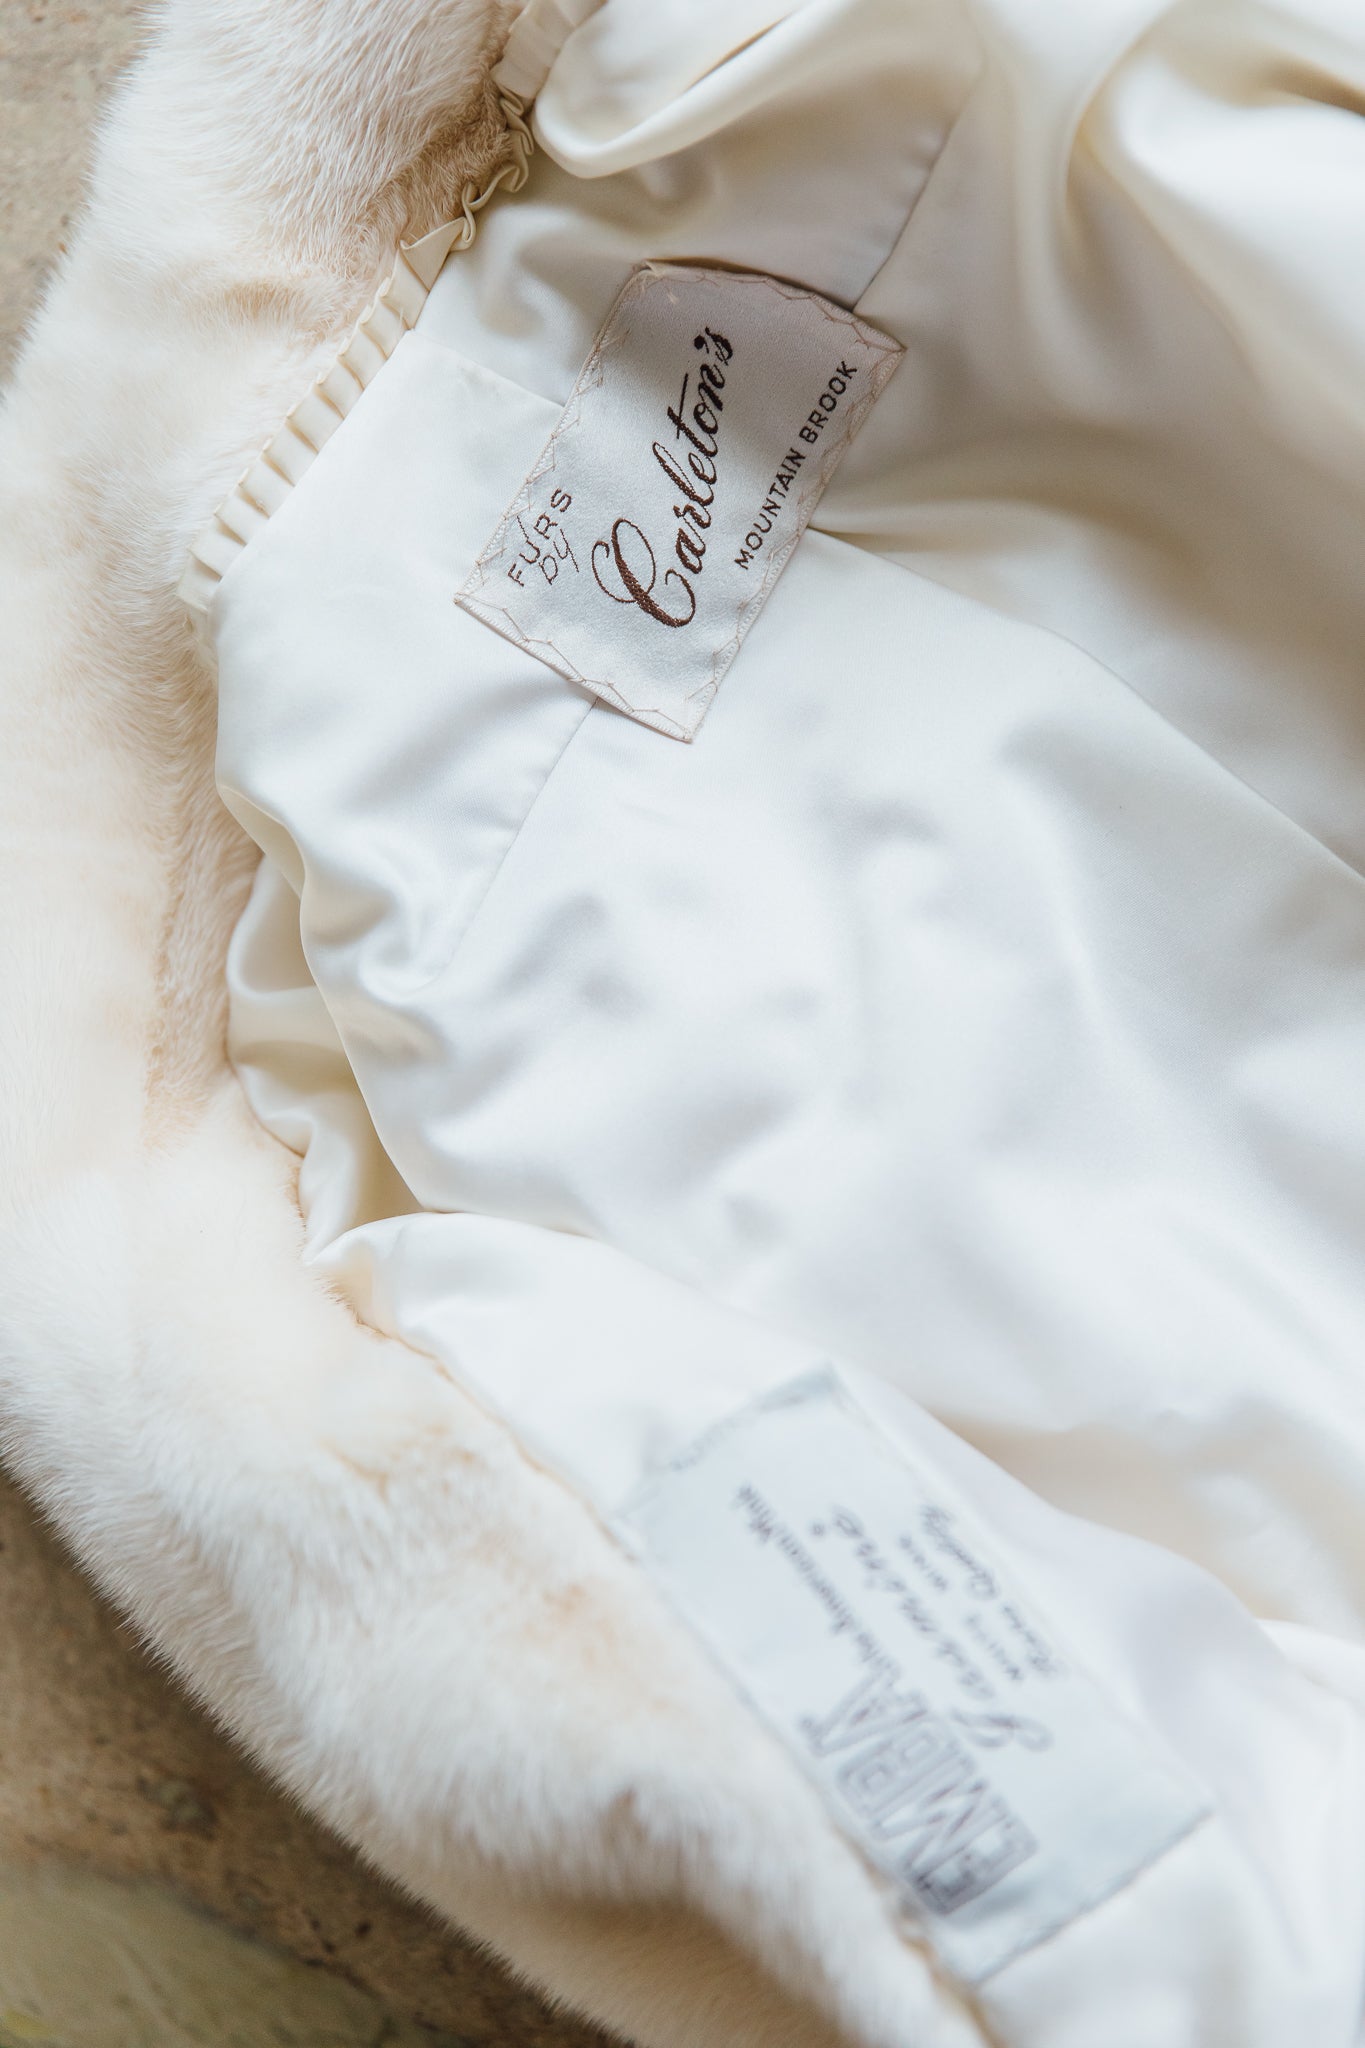 Furs By Carleton's Cropped White Fur